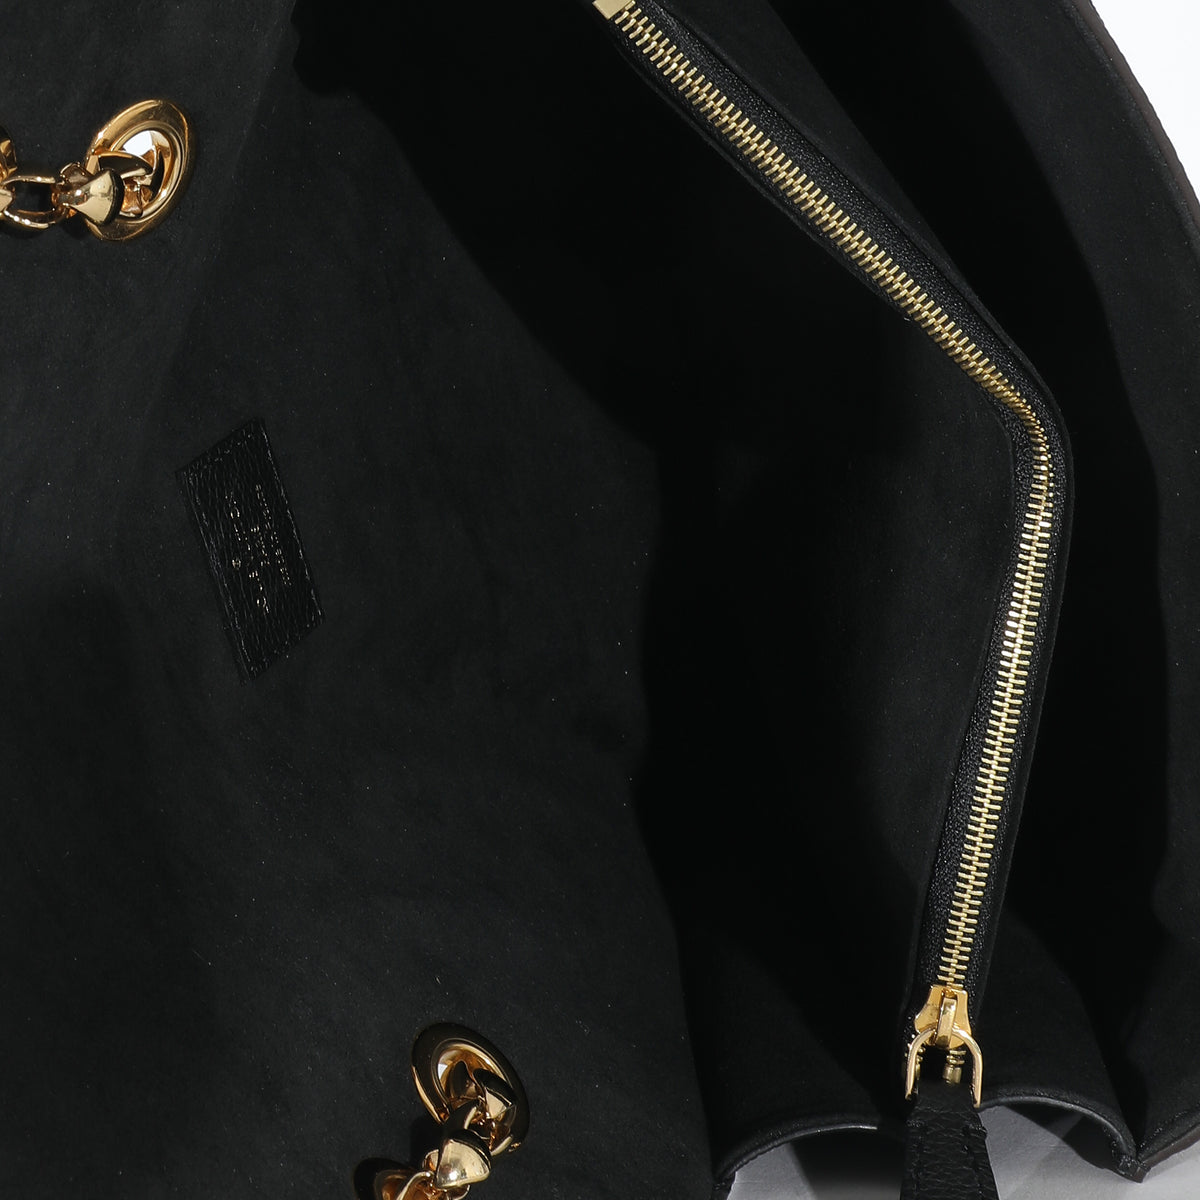 Louis Vuitton Monogram Canvas & Black Leather Victoire Bag, myGemma